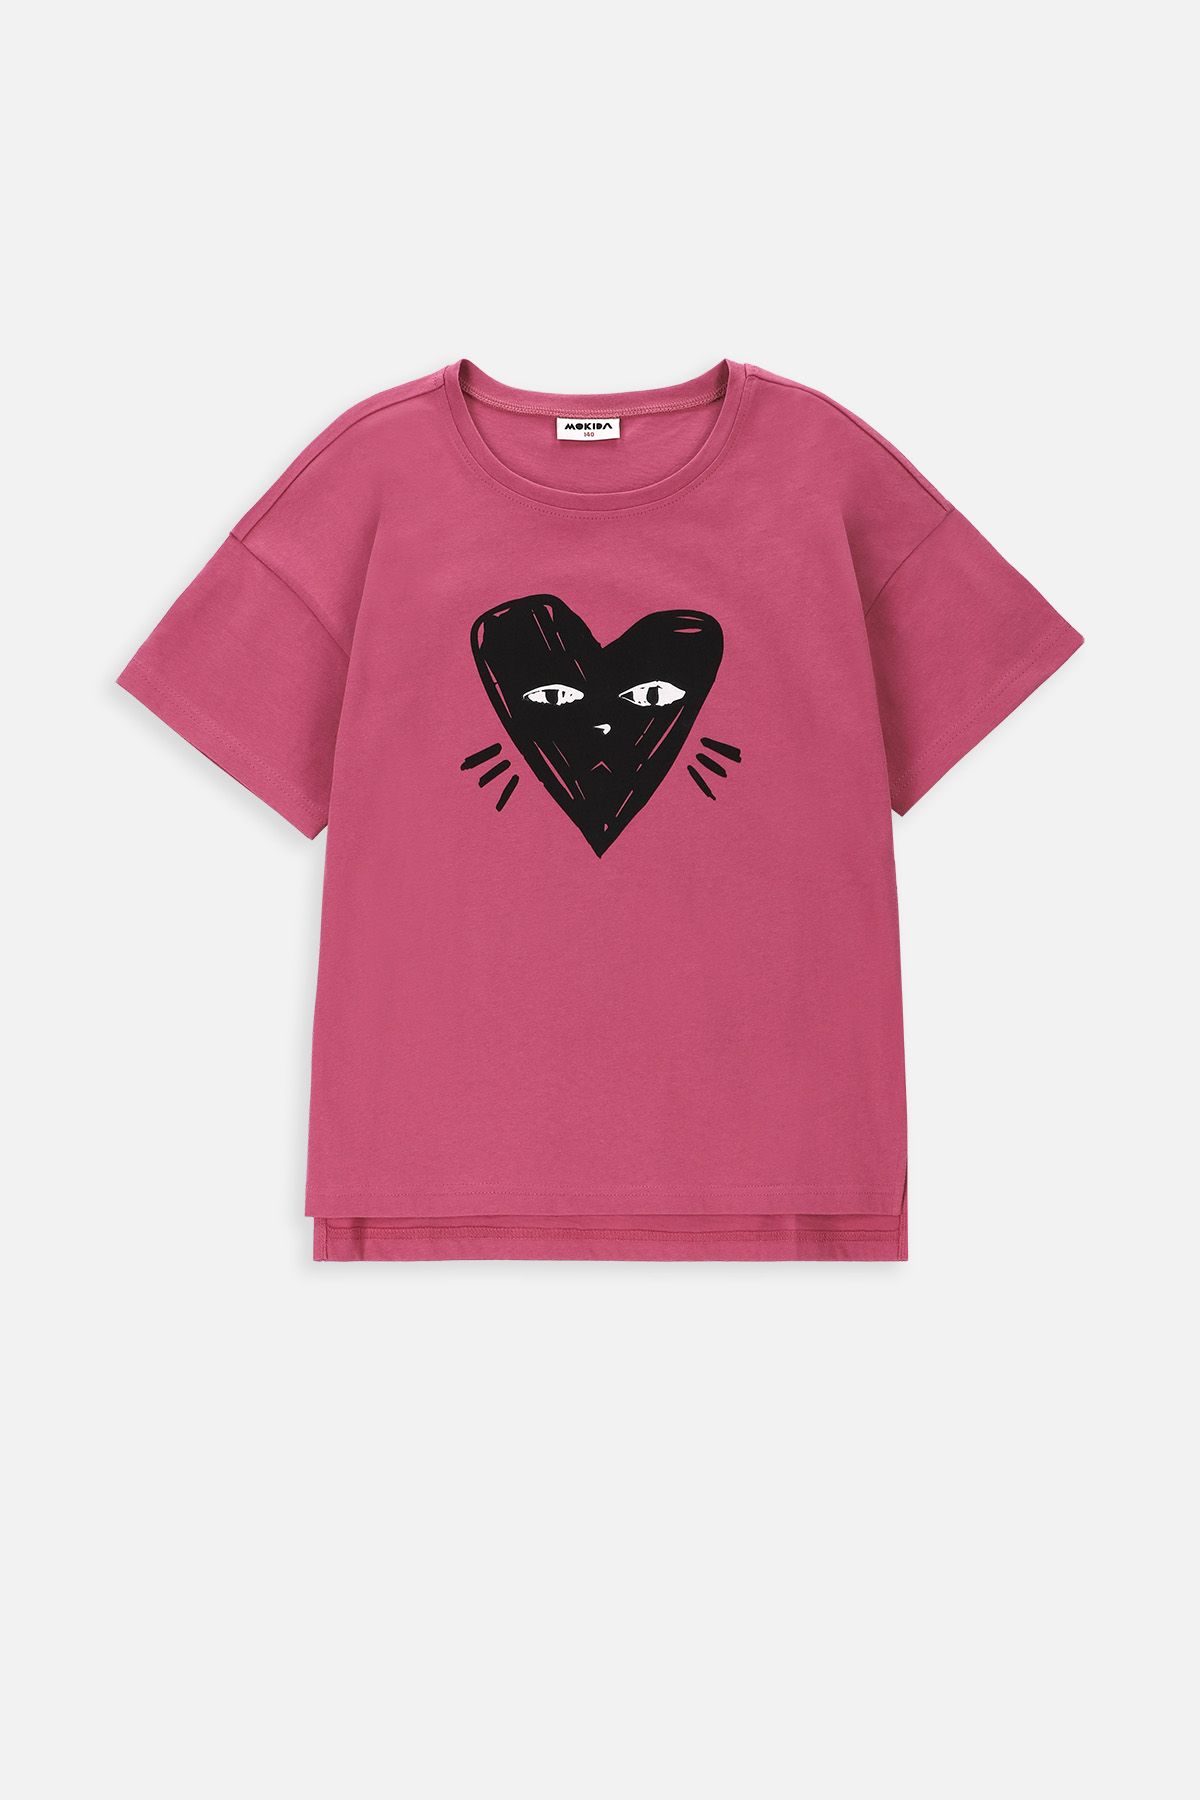 T-shirt z krótkim rękawem różowy z sercem-kotkiem 2228473